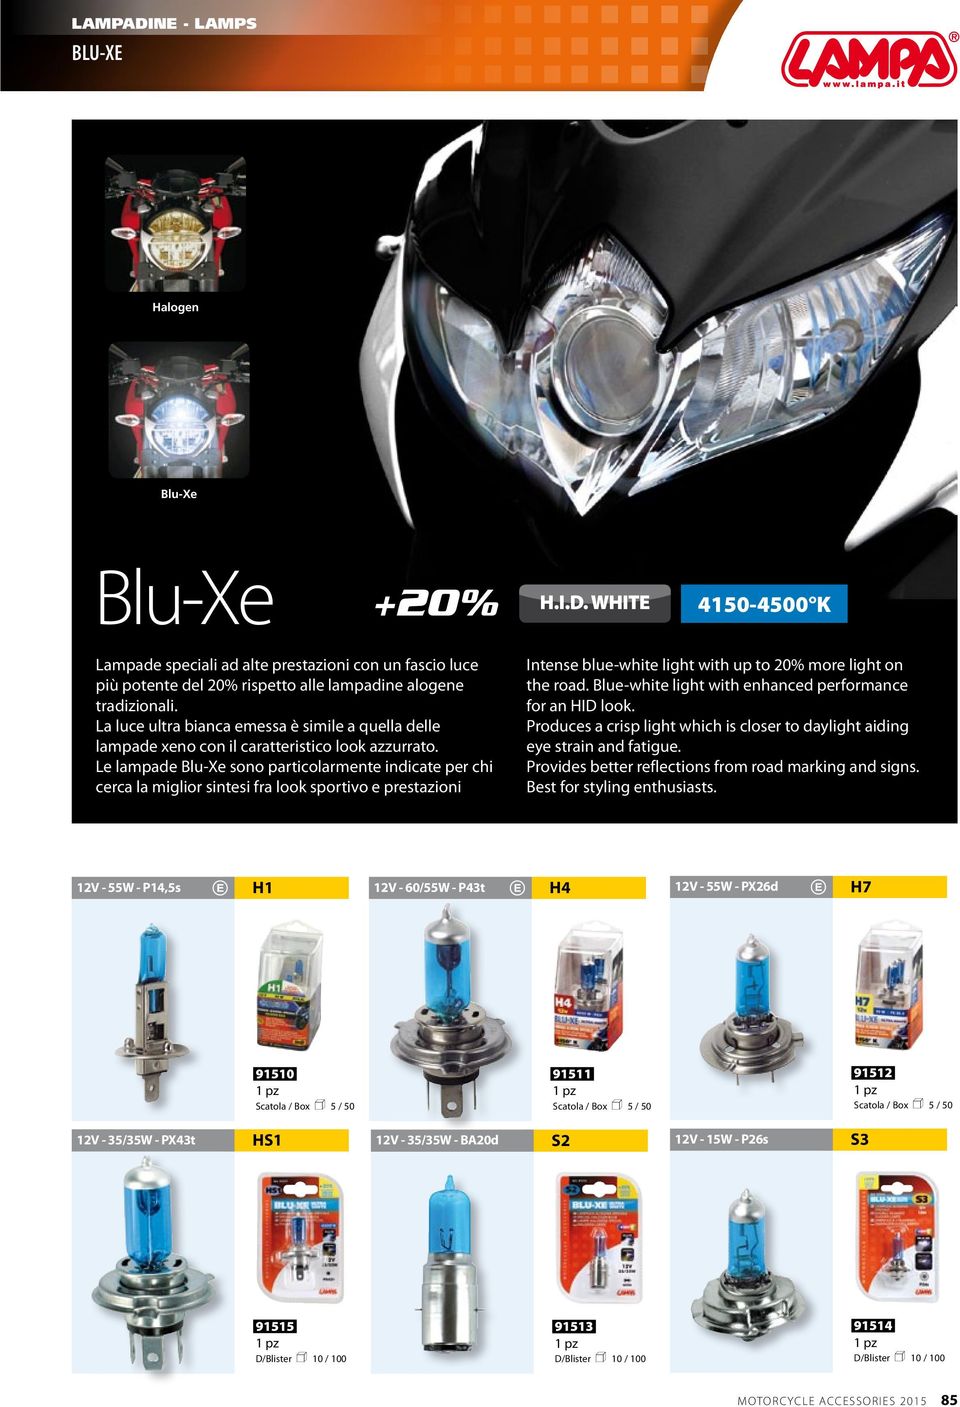 Le lampade Blu-Xe sono particolarmente indicate per chi cerca la miglior sintesi fra look sportivo e prestazioni Intense blue-white light with up to 20% more light on the road.